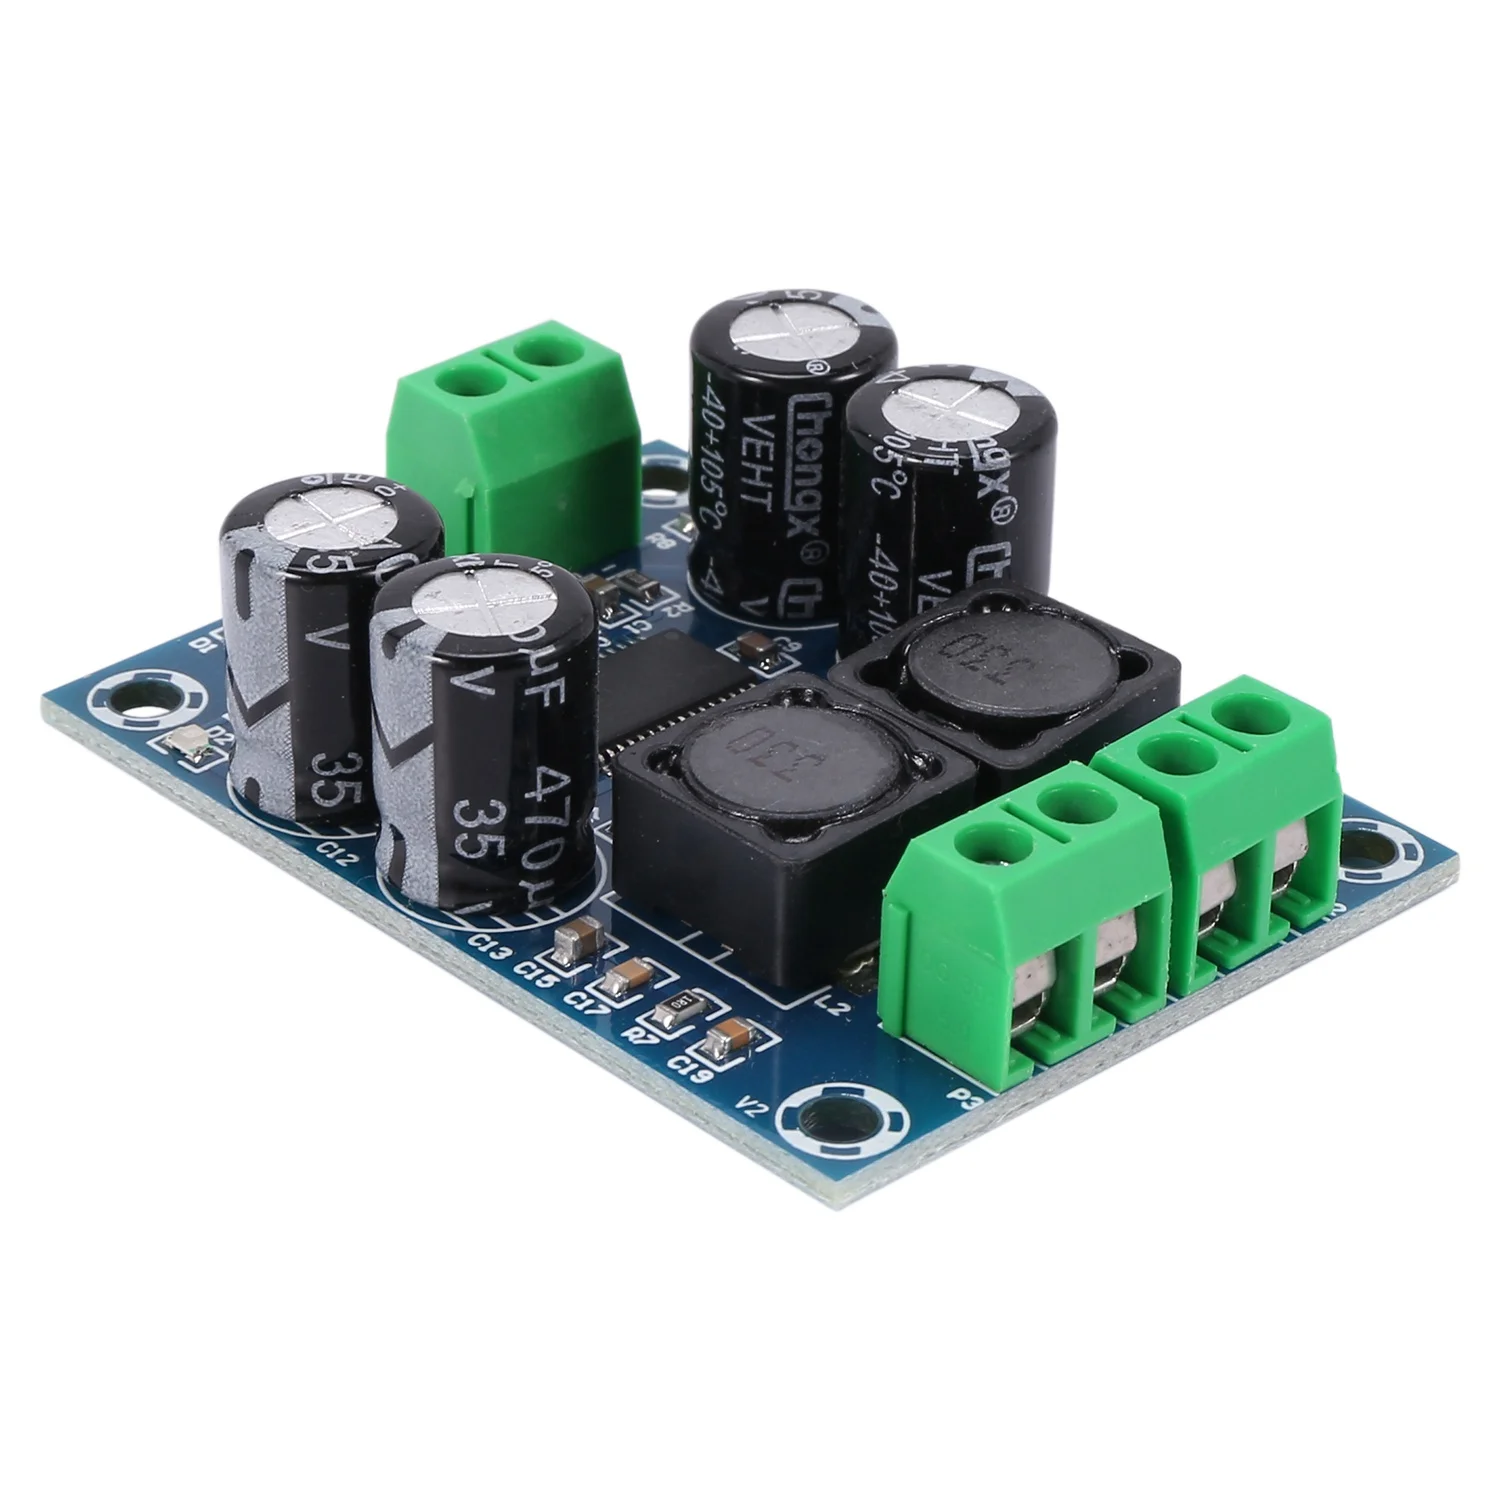 

XH-M311 Mini Digital Amplifier Board TPA3118 Audio Amplifier Board Audio Power Amplifier Module Mono 60W